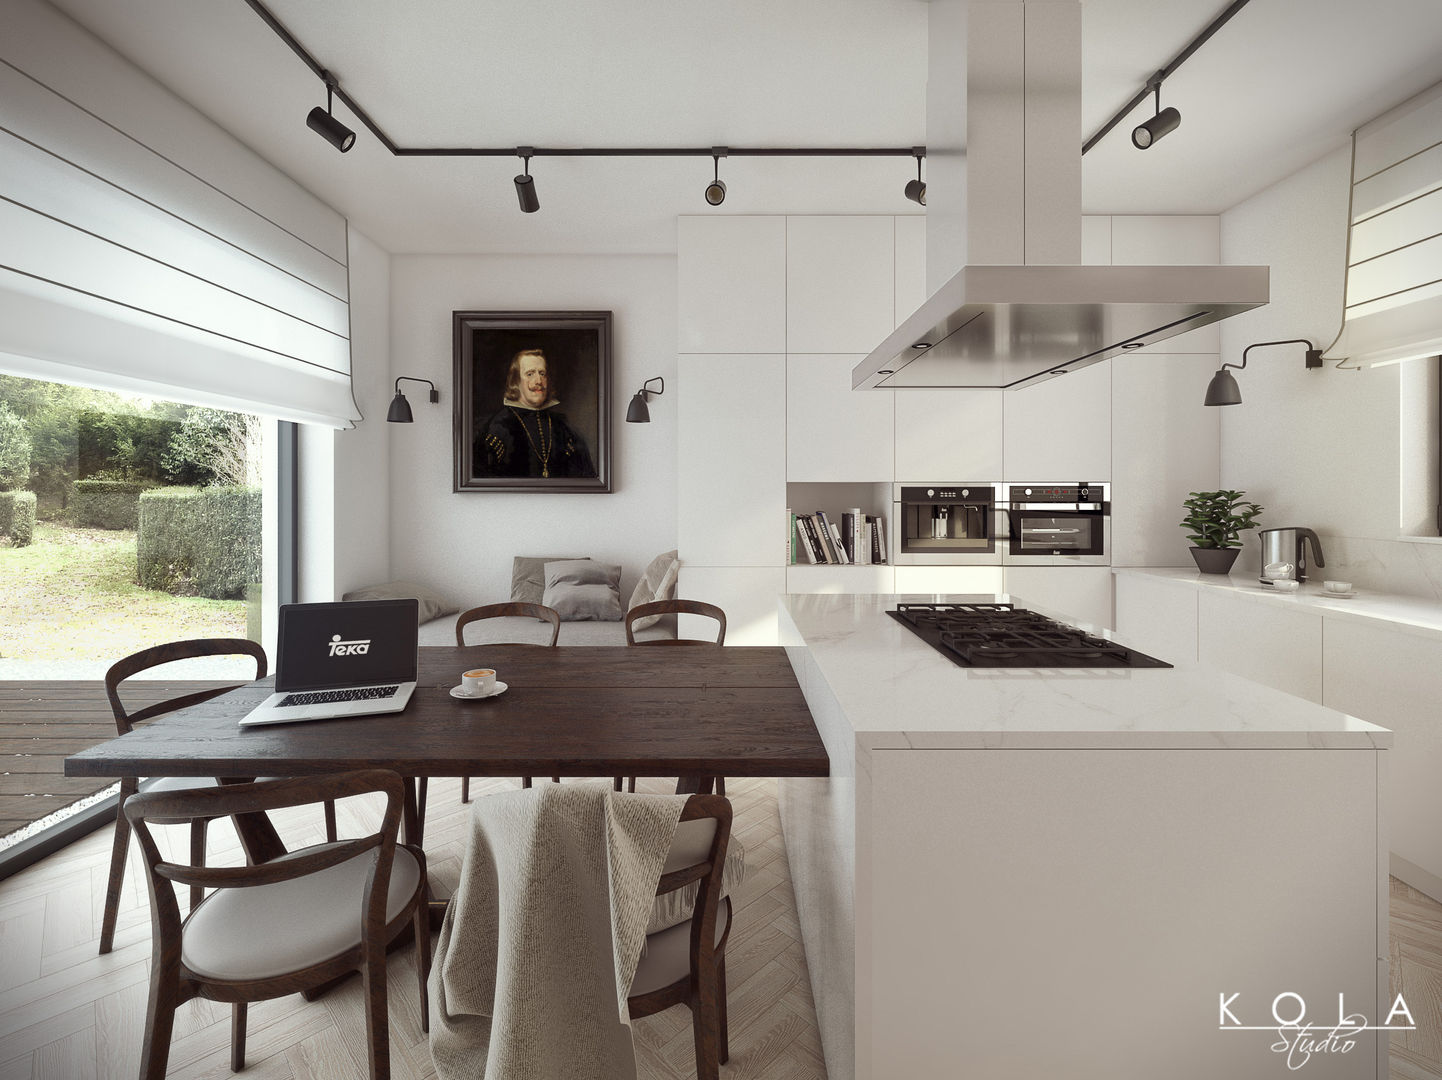 Eclectic kitchen / Kuchnia eklektyczna, Kola Studio Wizualizacje Architektoniczne Kola Studio Wizualizacje Architektoniczne Kitchen